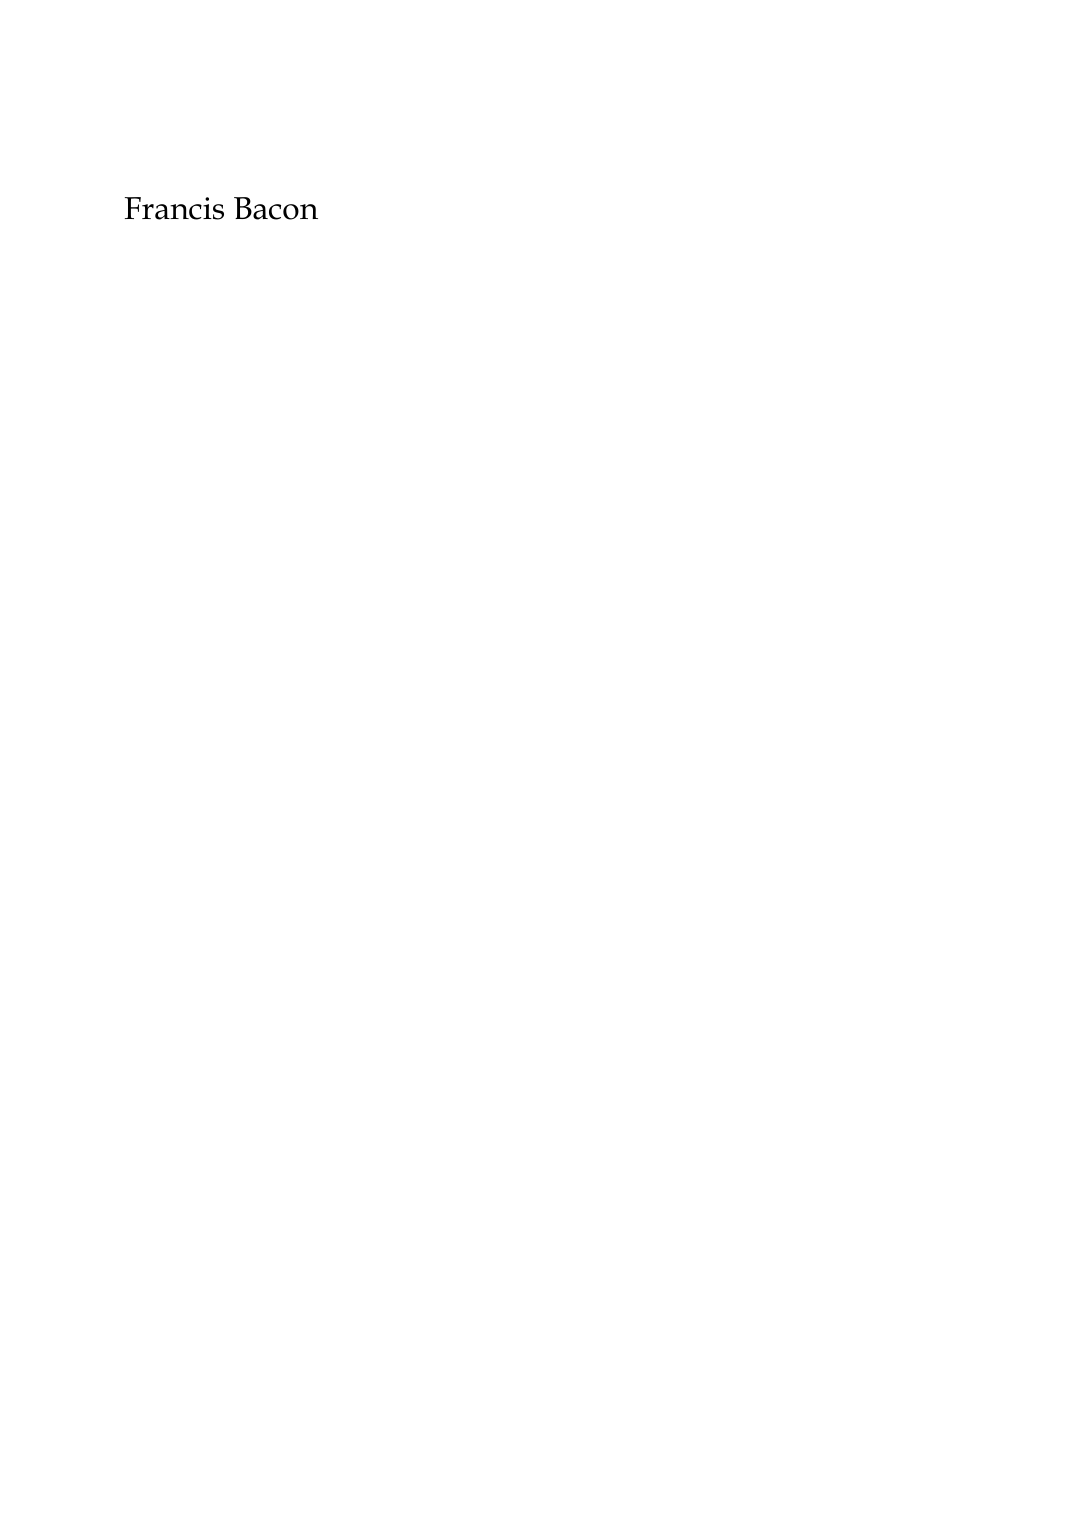 Prévisualisation du document Francis Bacon par Denis MilhauConservateur du Musée des Augustins à Toulouse Une vision qui traque les modèles avec la plus torturante indiscrétion et quiassaille les spectateurs dans leur sensibilité, fait de Bacon un peintre d'uneindéniable originalité.